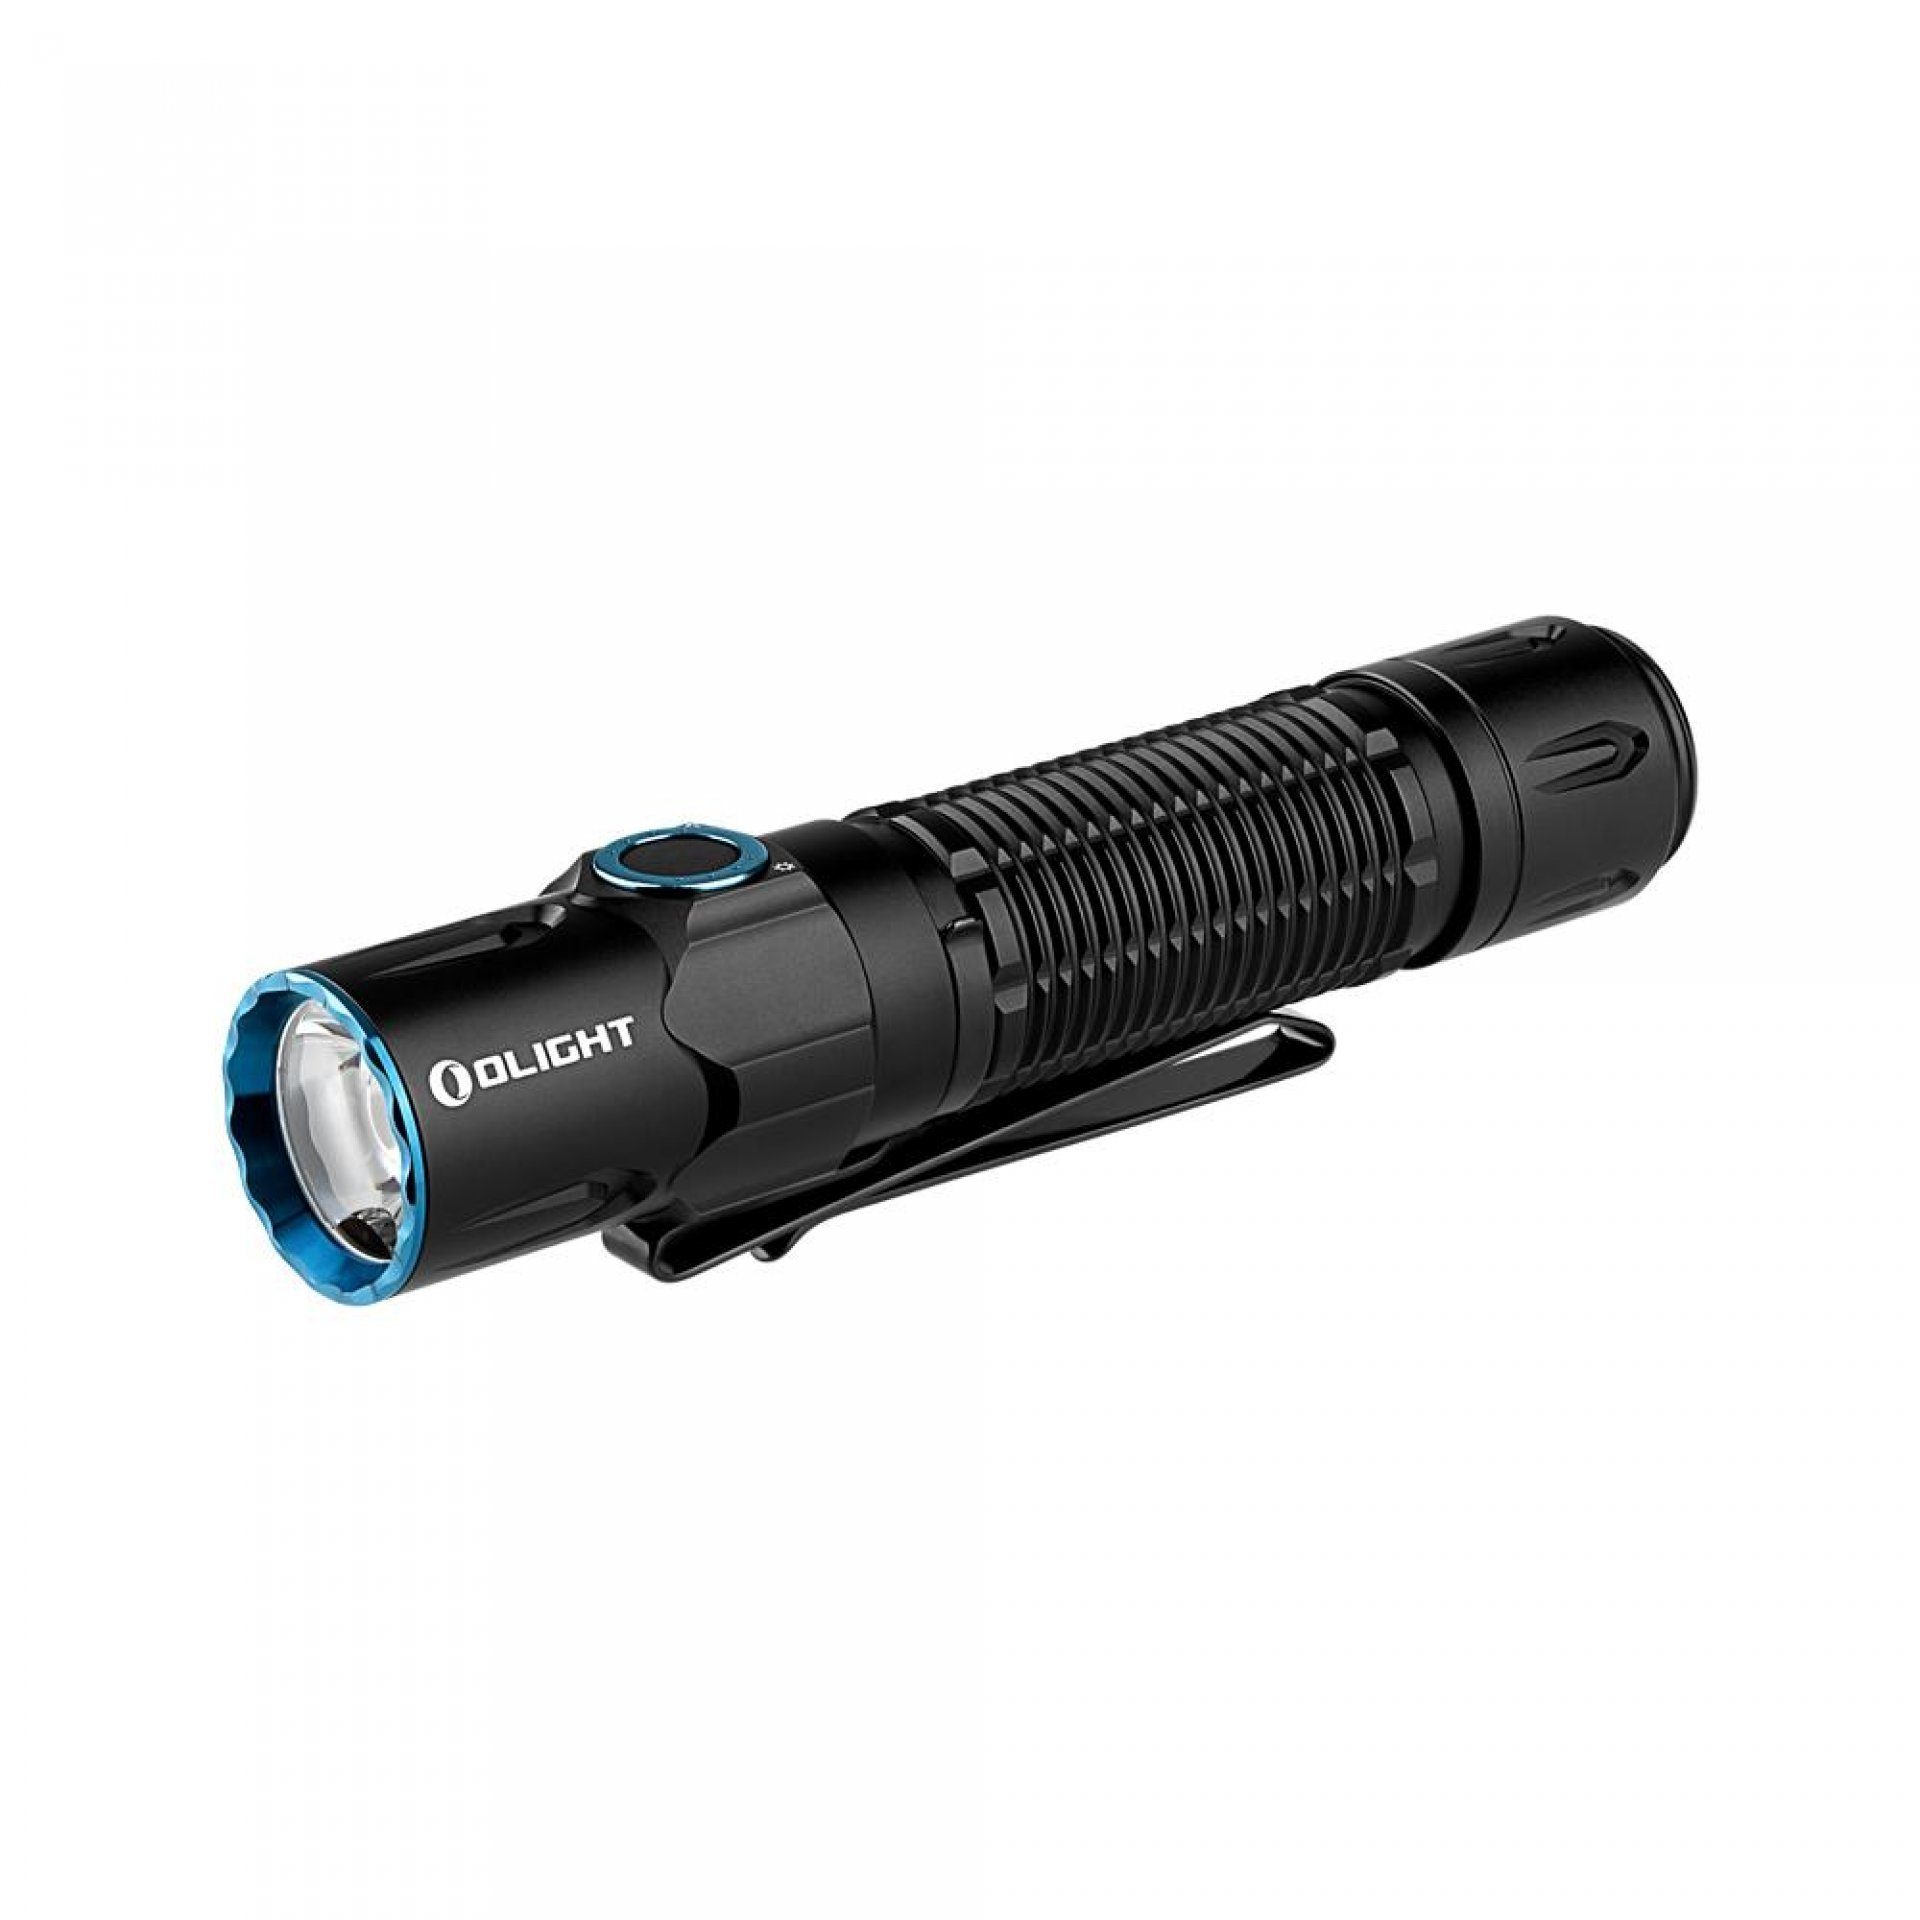 OLIGHT Taschenlampe Warrior 3S LED Taktische Superhelle Taschenlampe USB Wiederaufladbar, USB Wiederaufladbar mit Abstandssensor, für Alltag, Outdoor, etc Schwarz